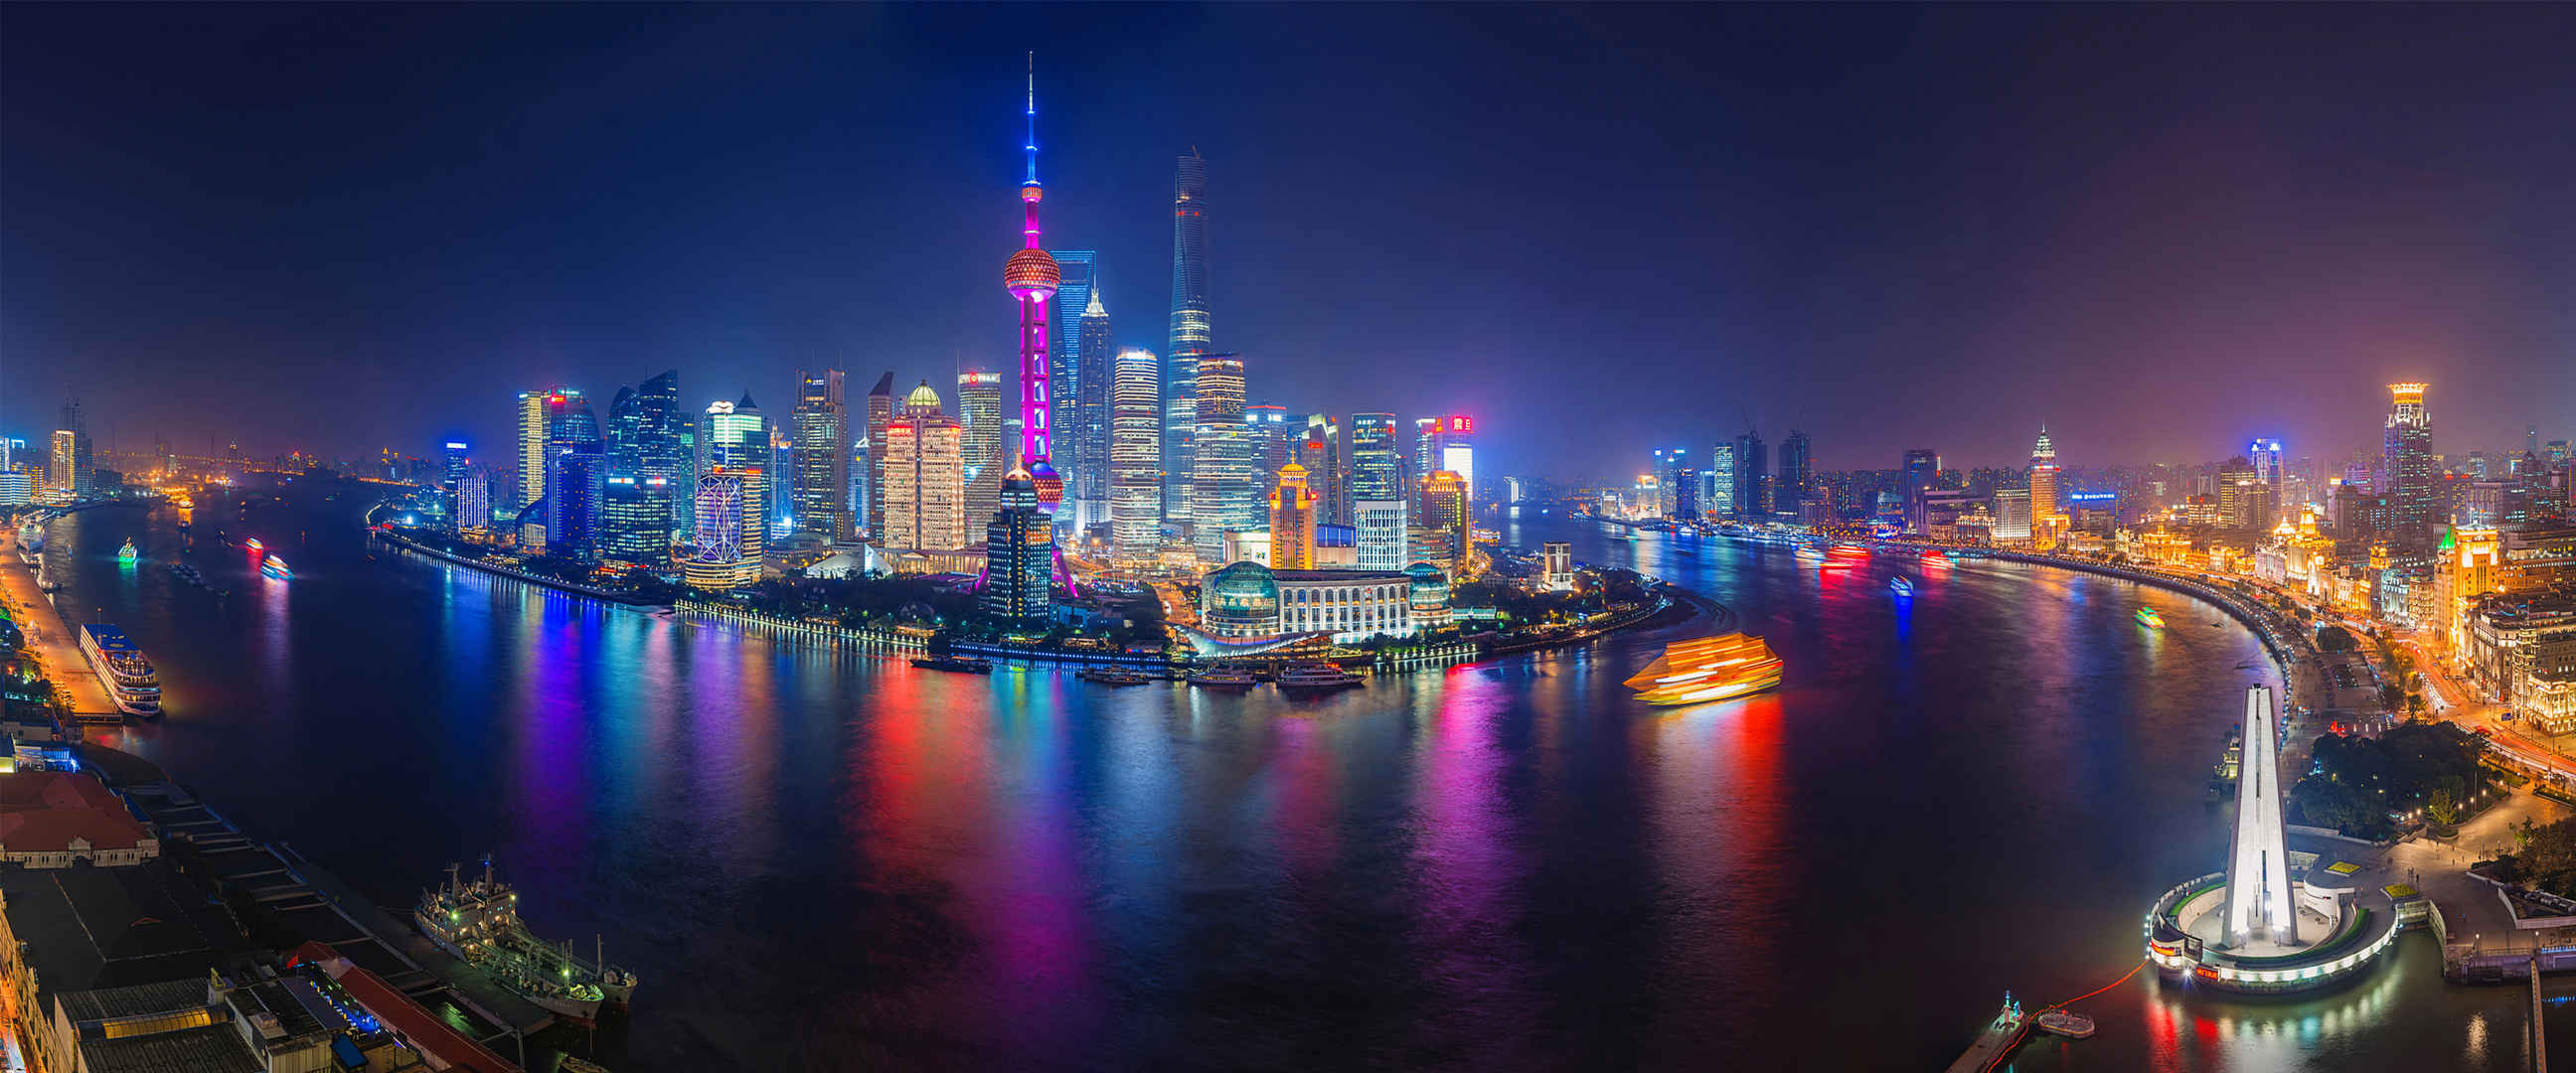 上海东方明珠江景夜色高清壁纸